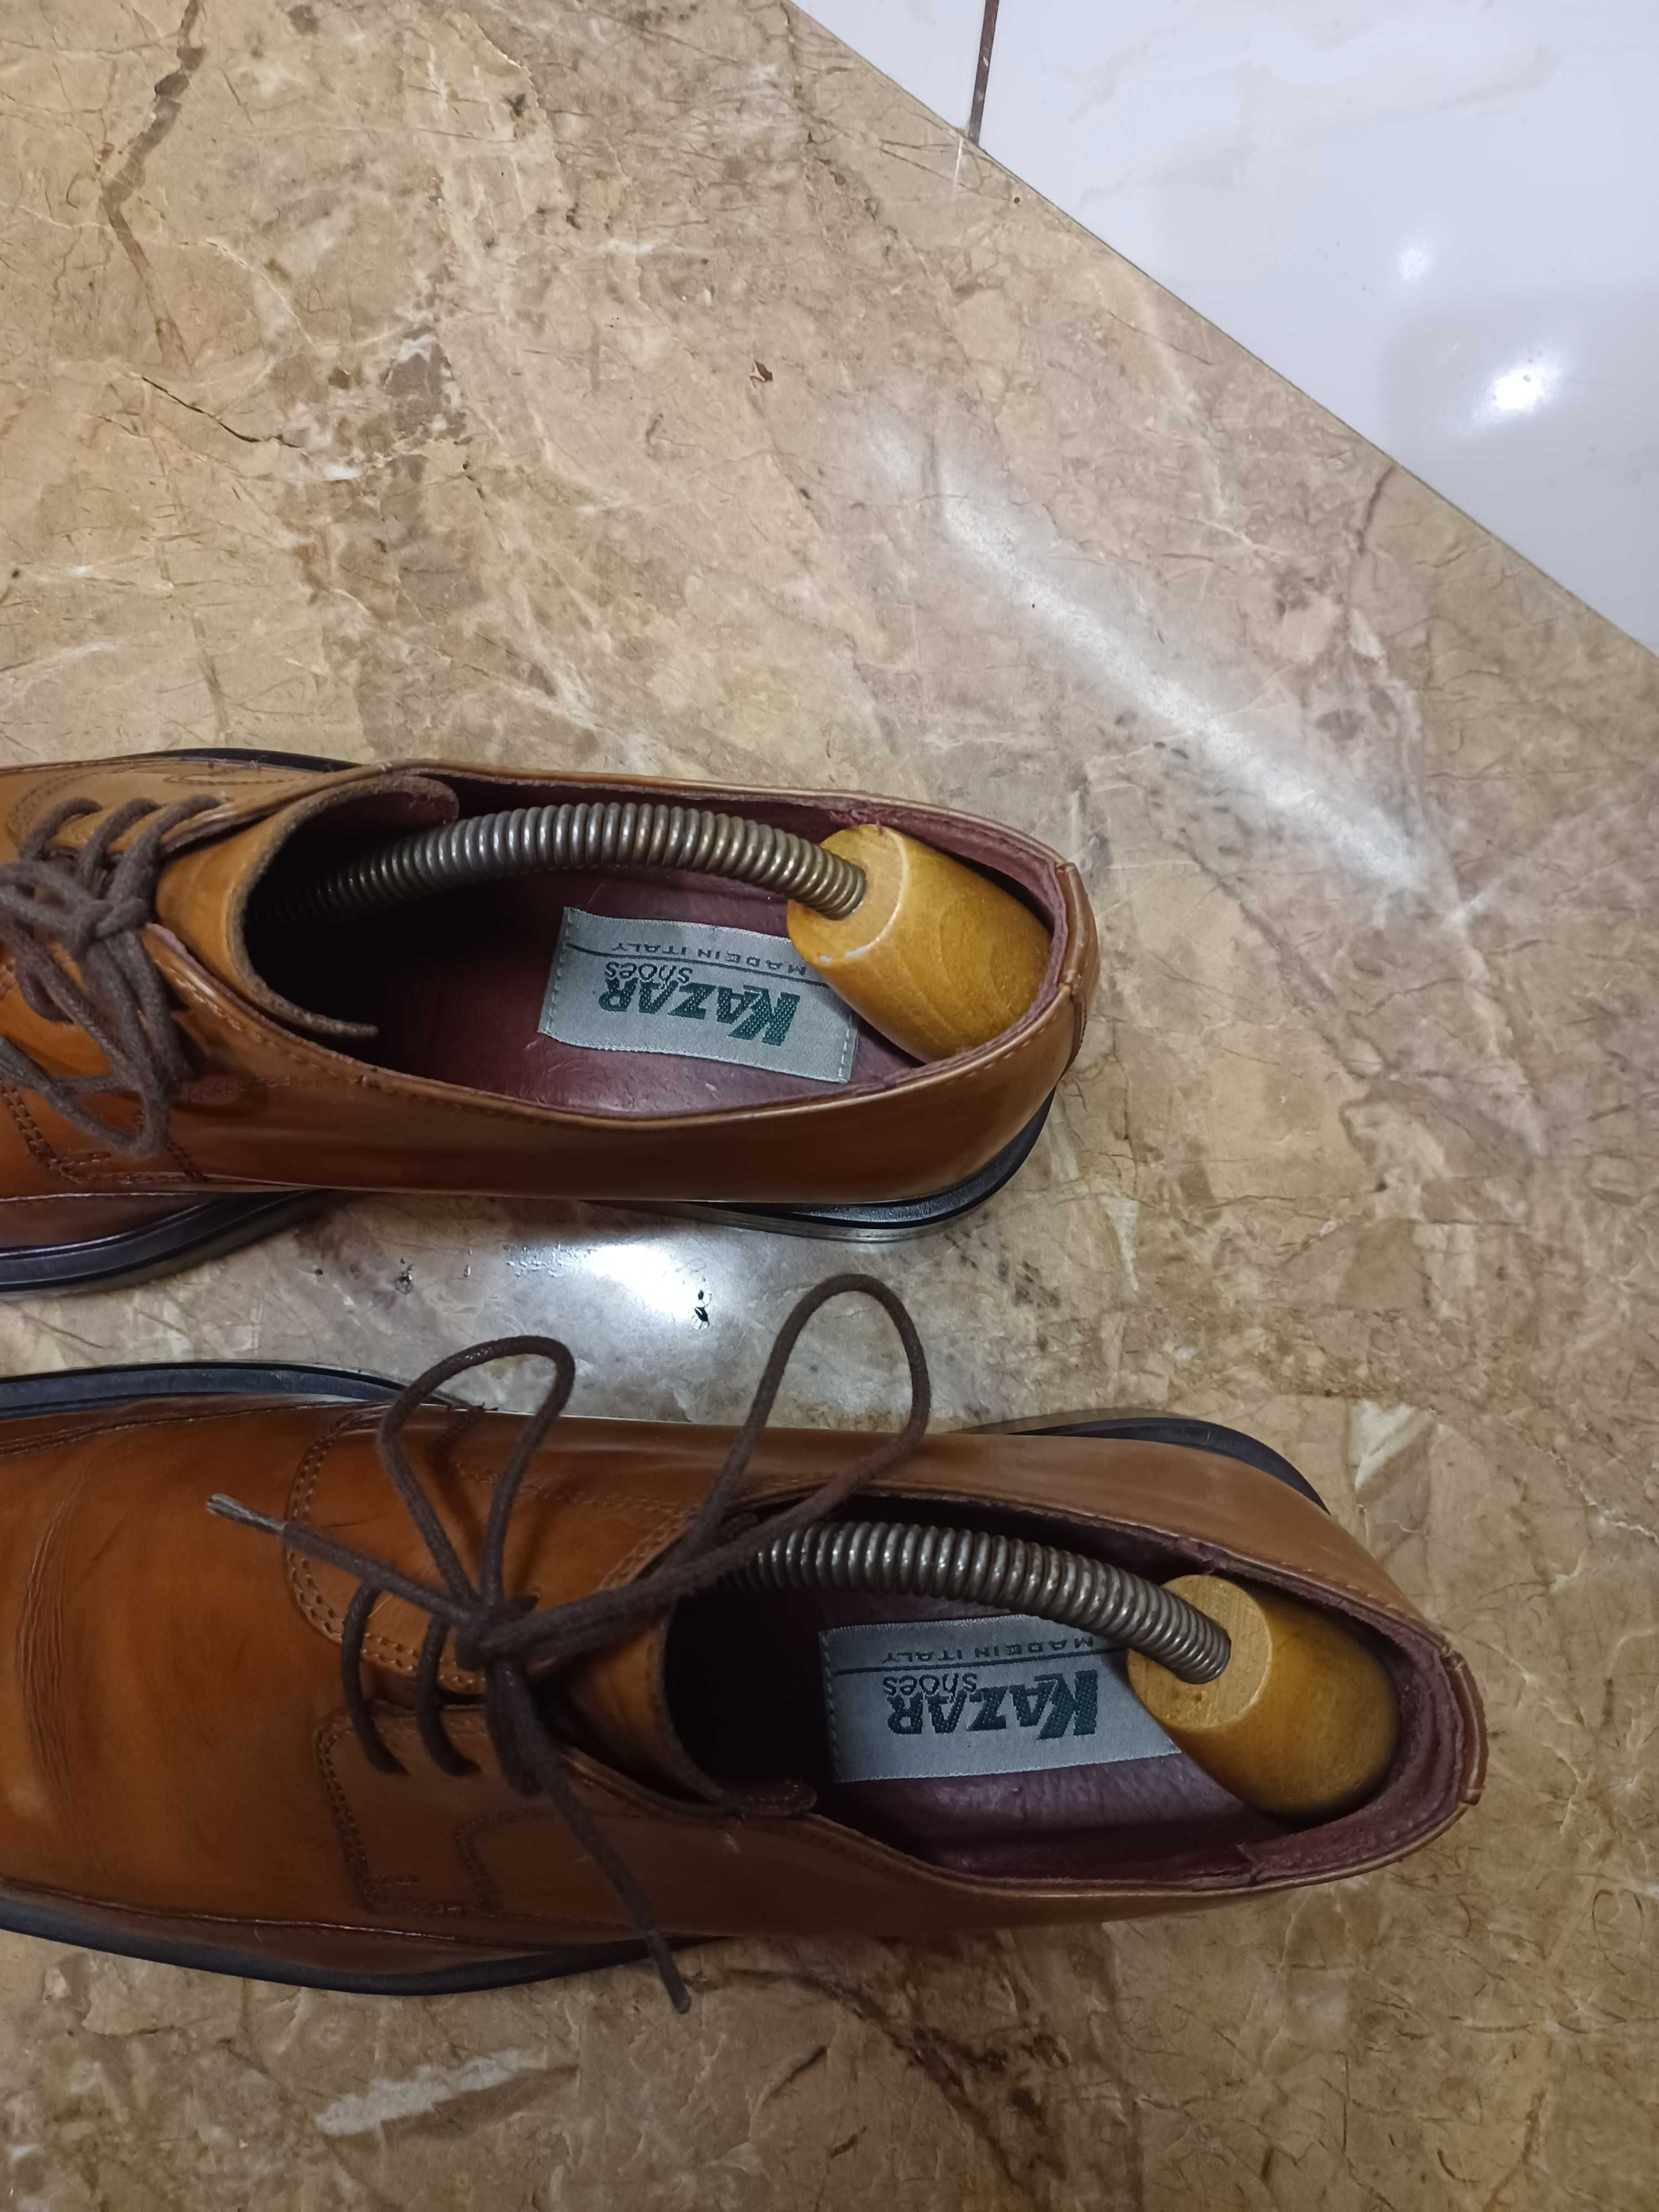 Sprzedam buty meskie firmy KAZAR..taki mercedes wsrod obuwia